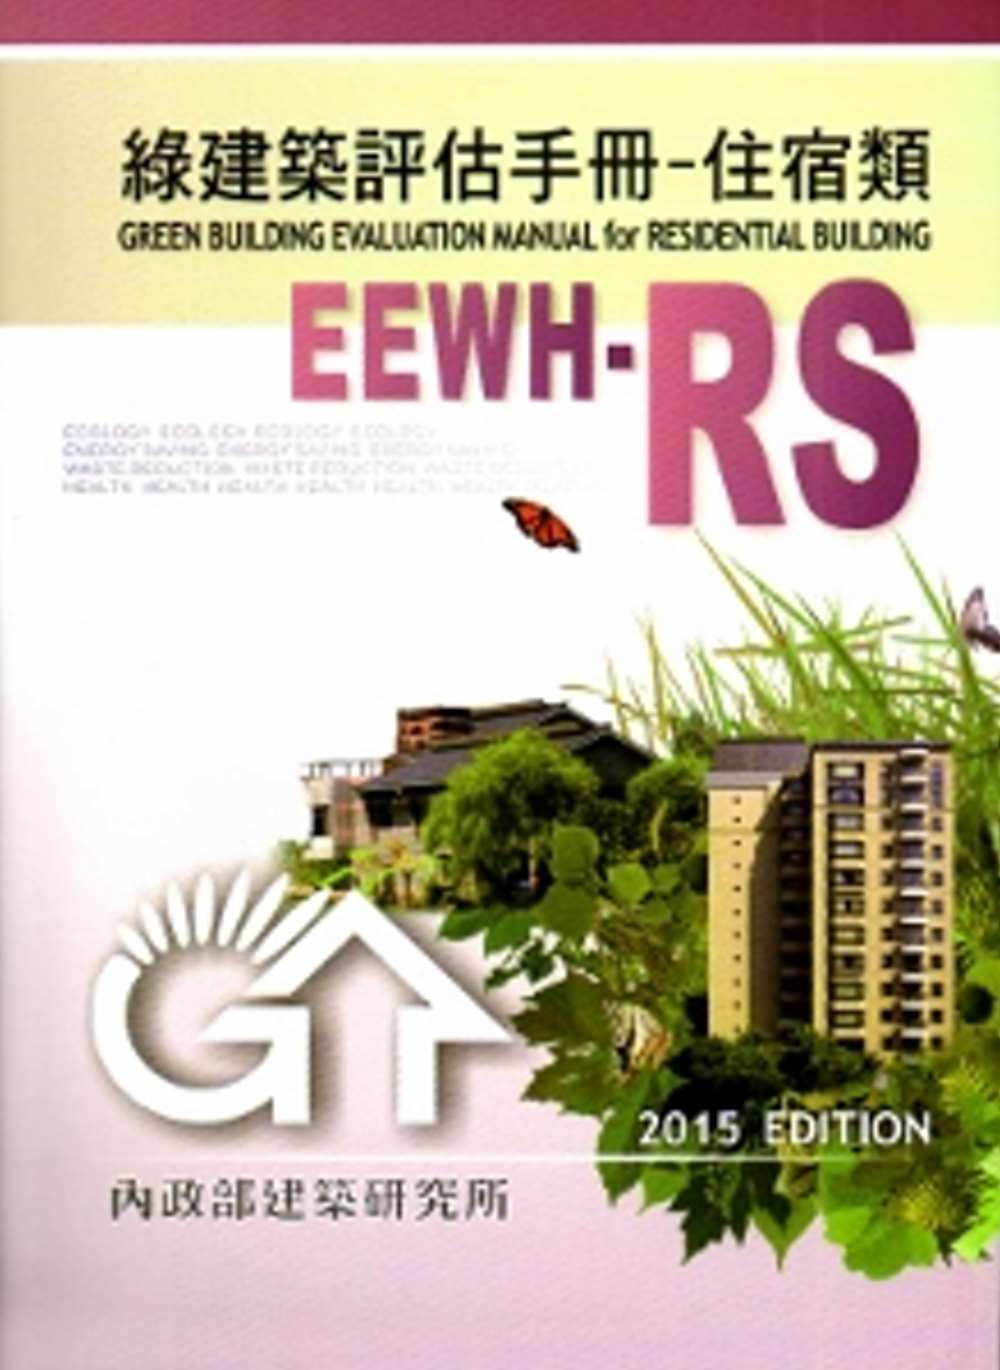 綠建築評估手冊-住宿類[2015年版/二版]